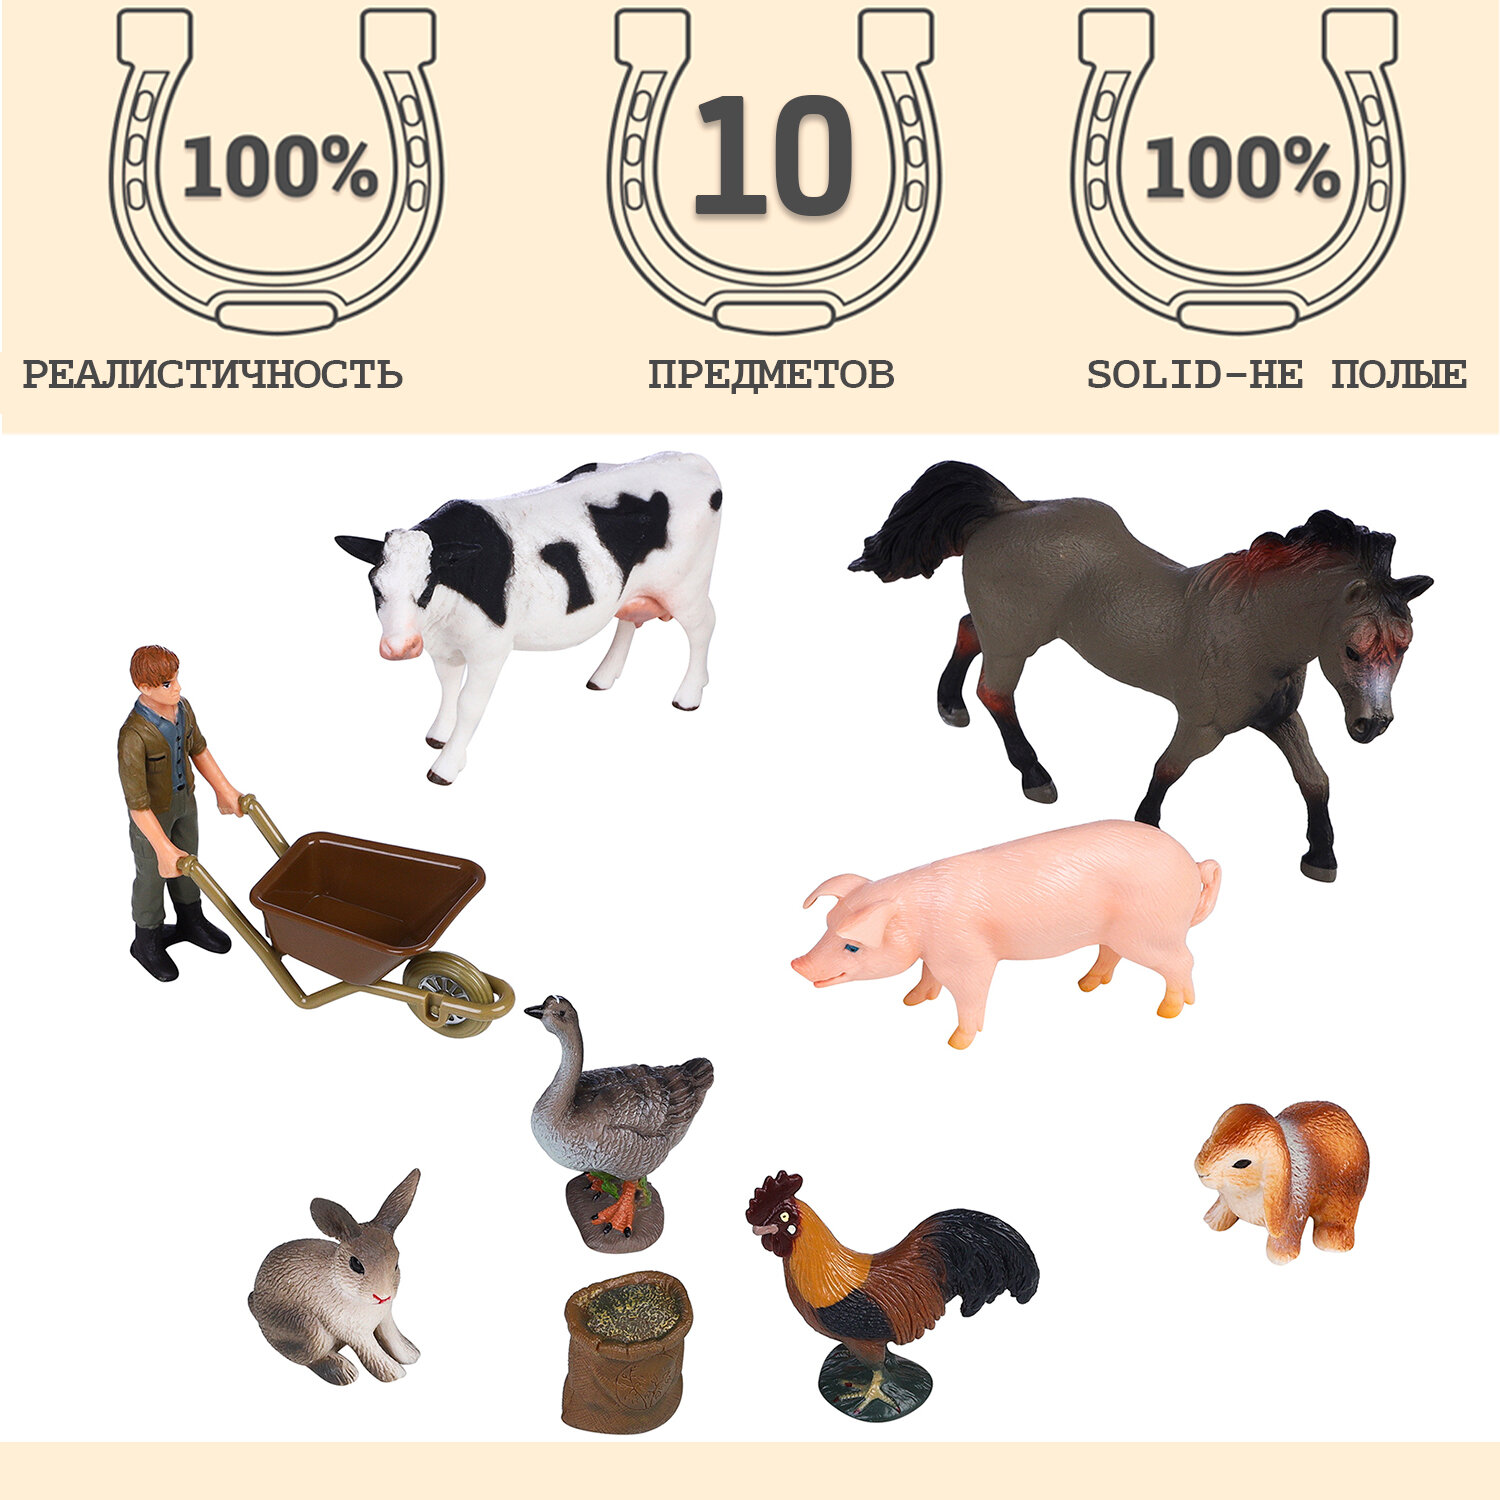 Фигурки животных серии "На ферме": Лошадь, корова, свинья, 2 кролика, гусь, петух, фермер, тележка (набор из 10 предметов)